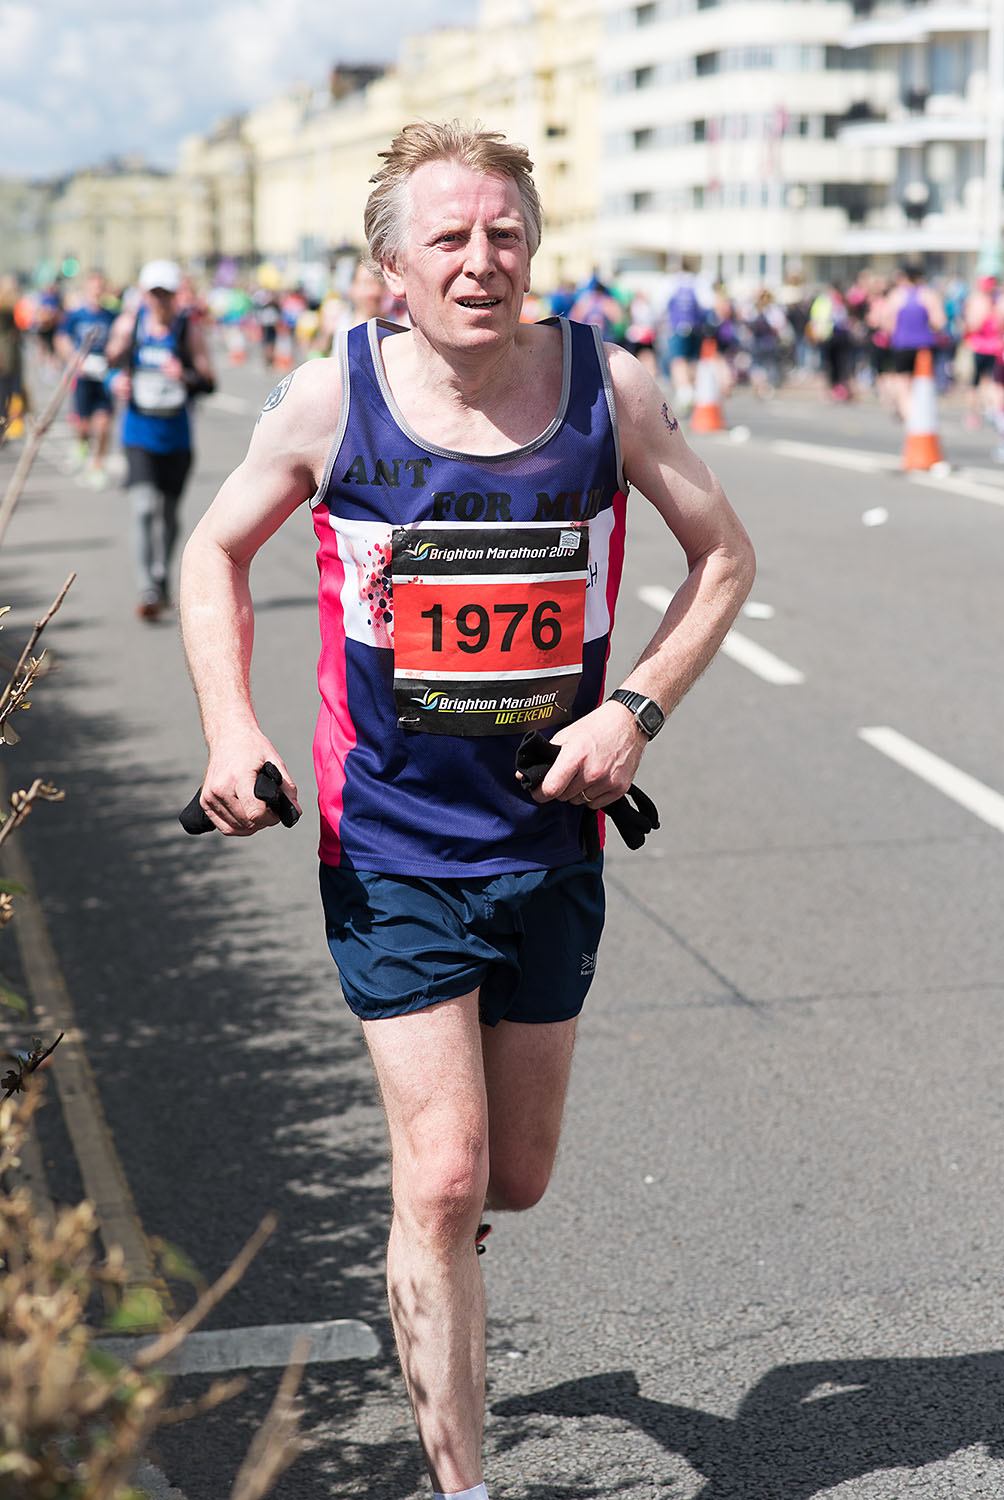  Brighton Marathon 2016 - Mile 25 